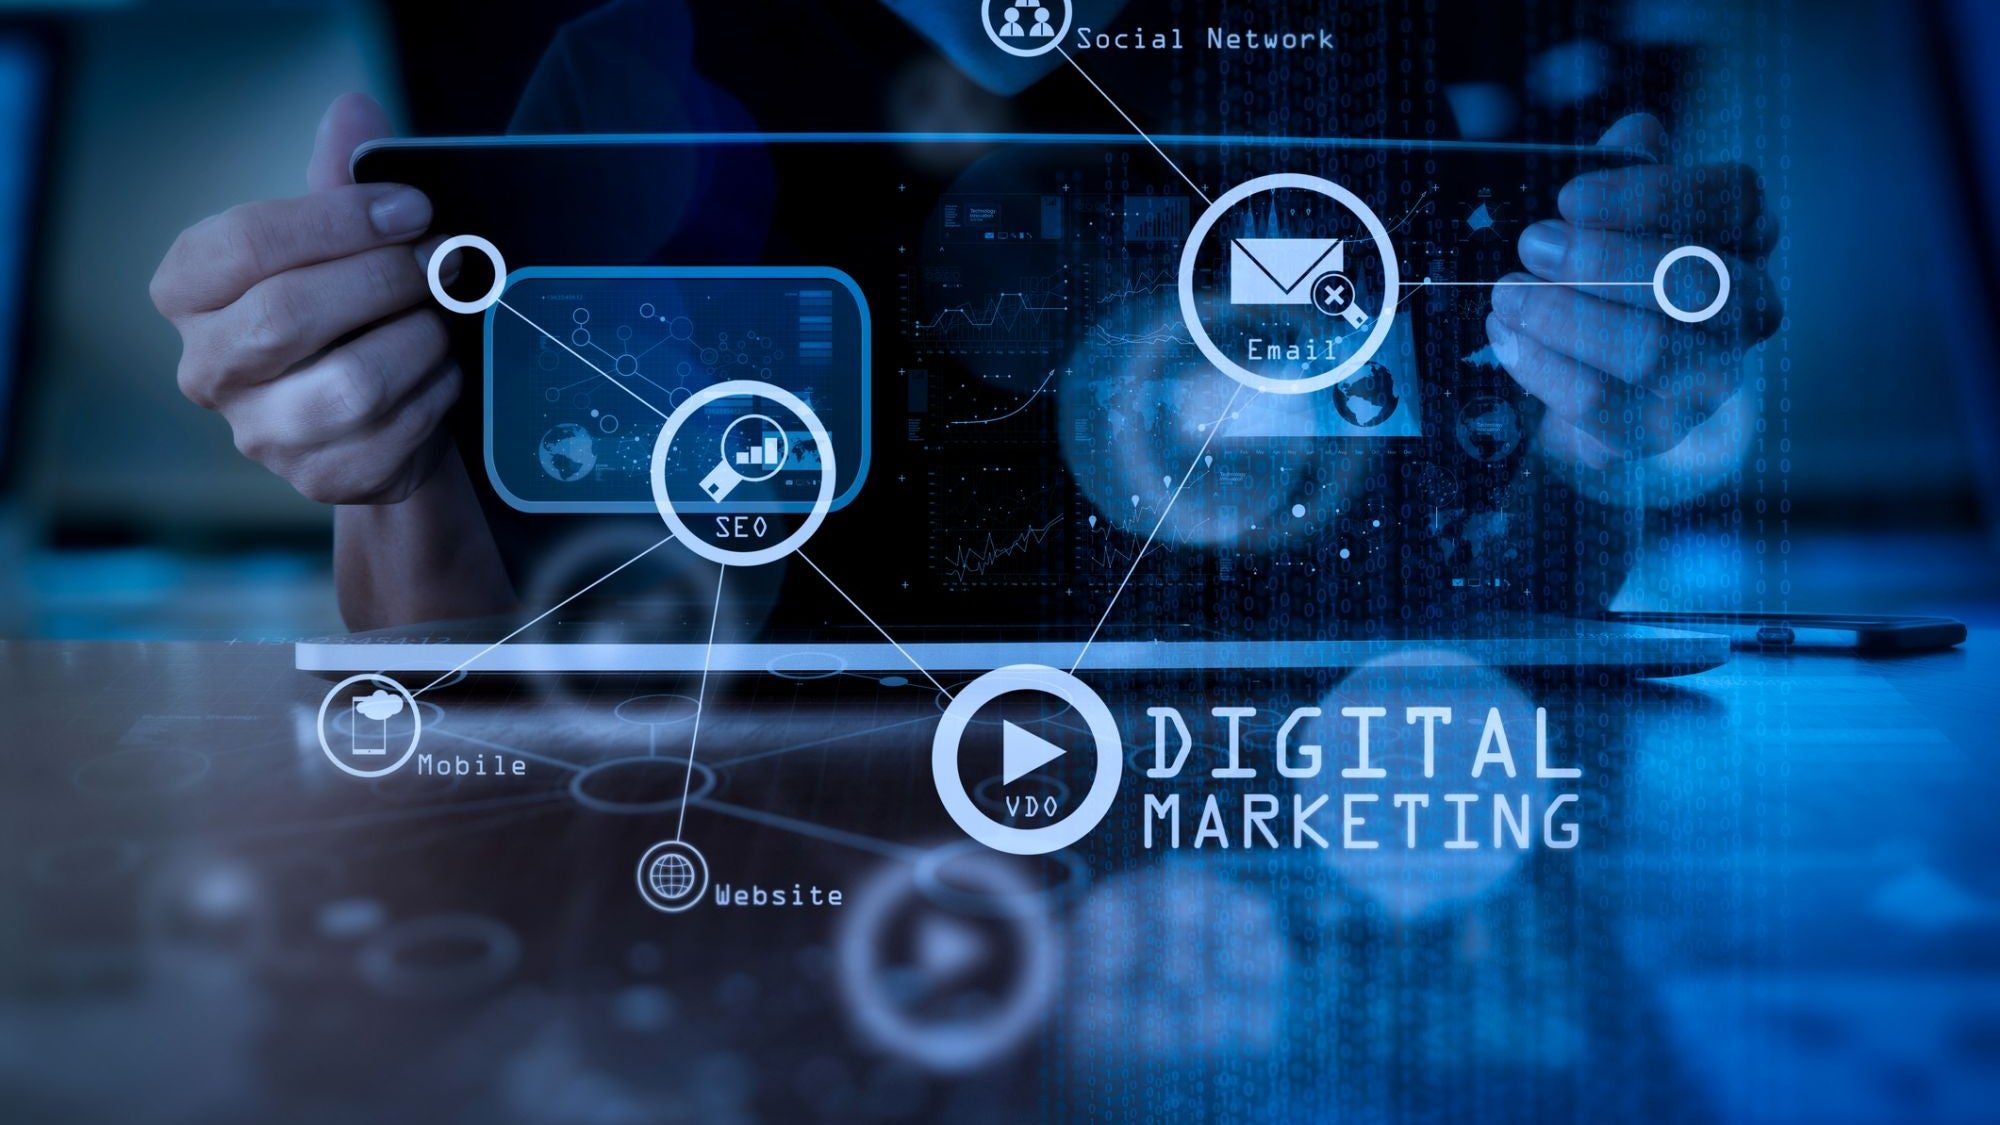 Digital marketing explained